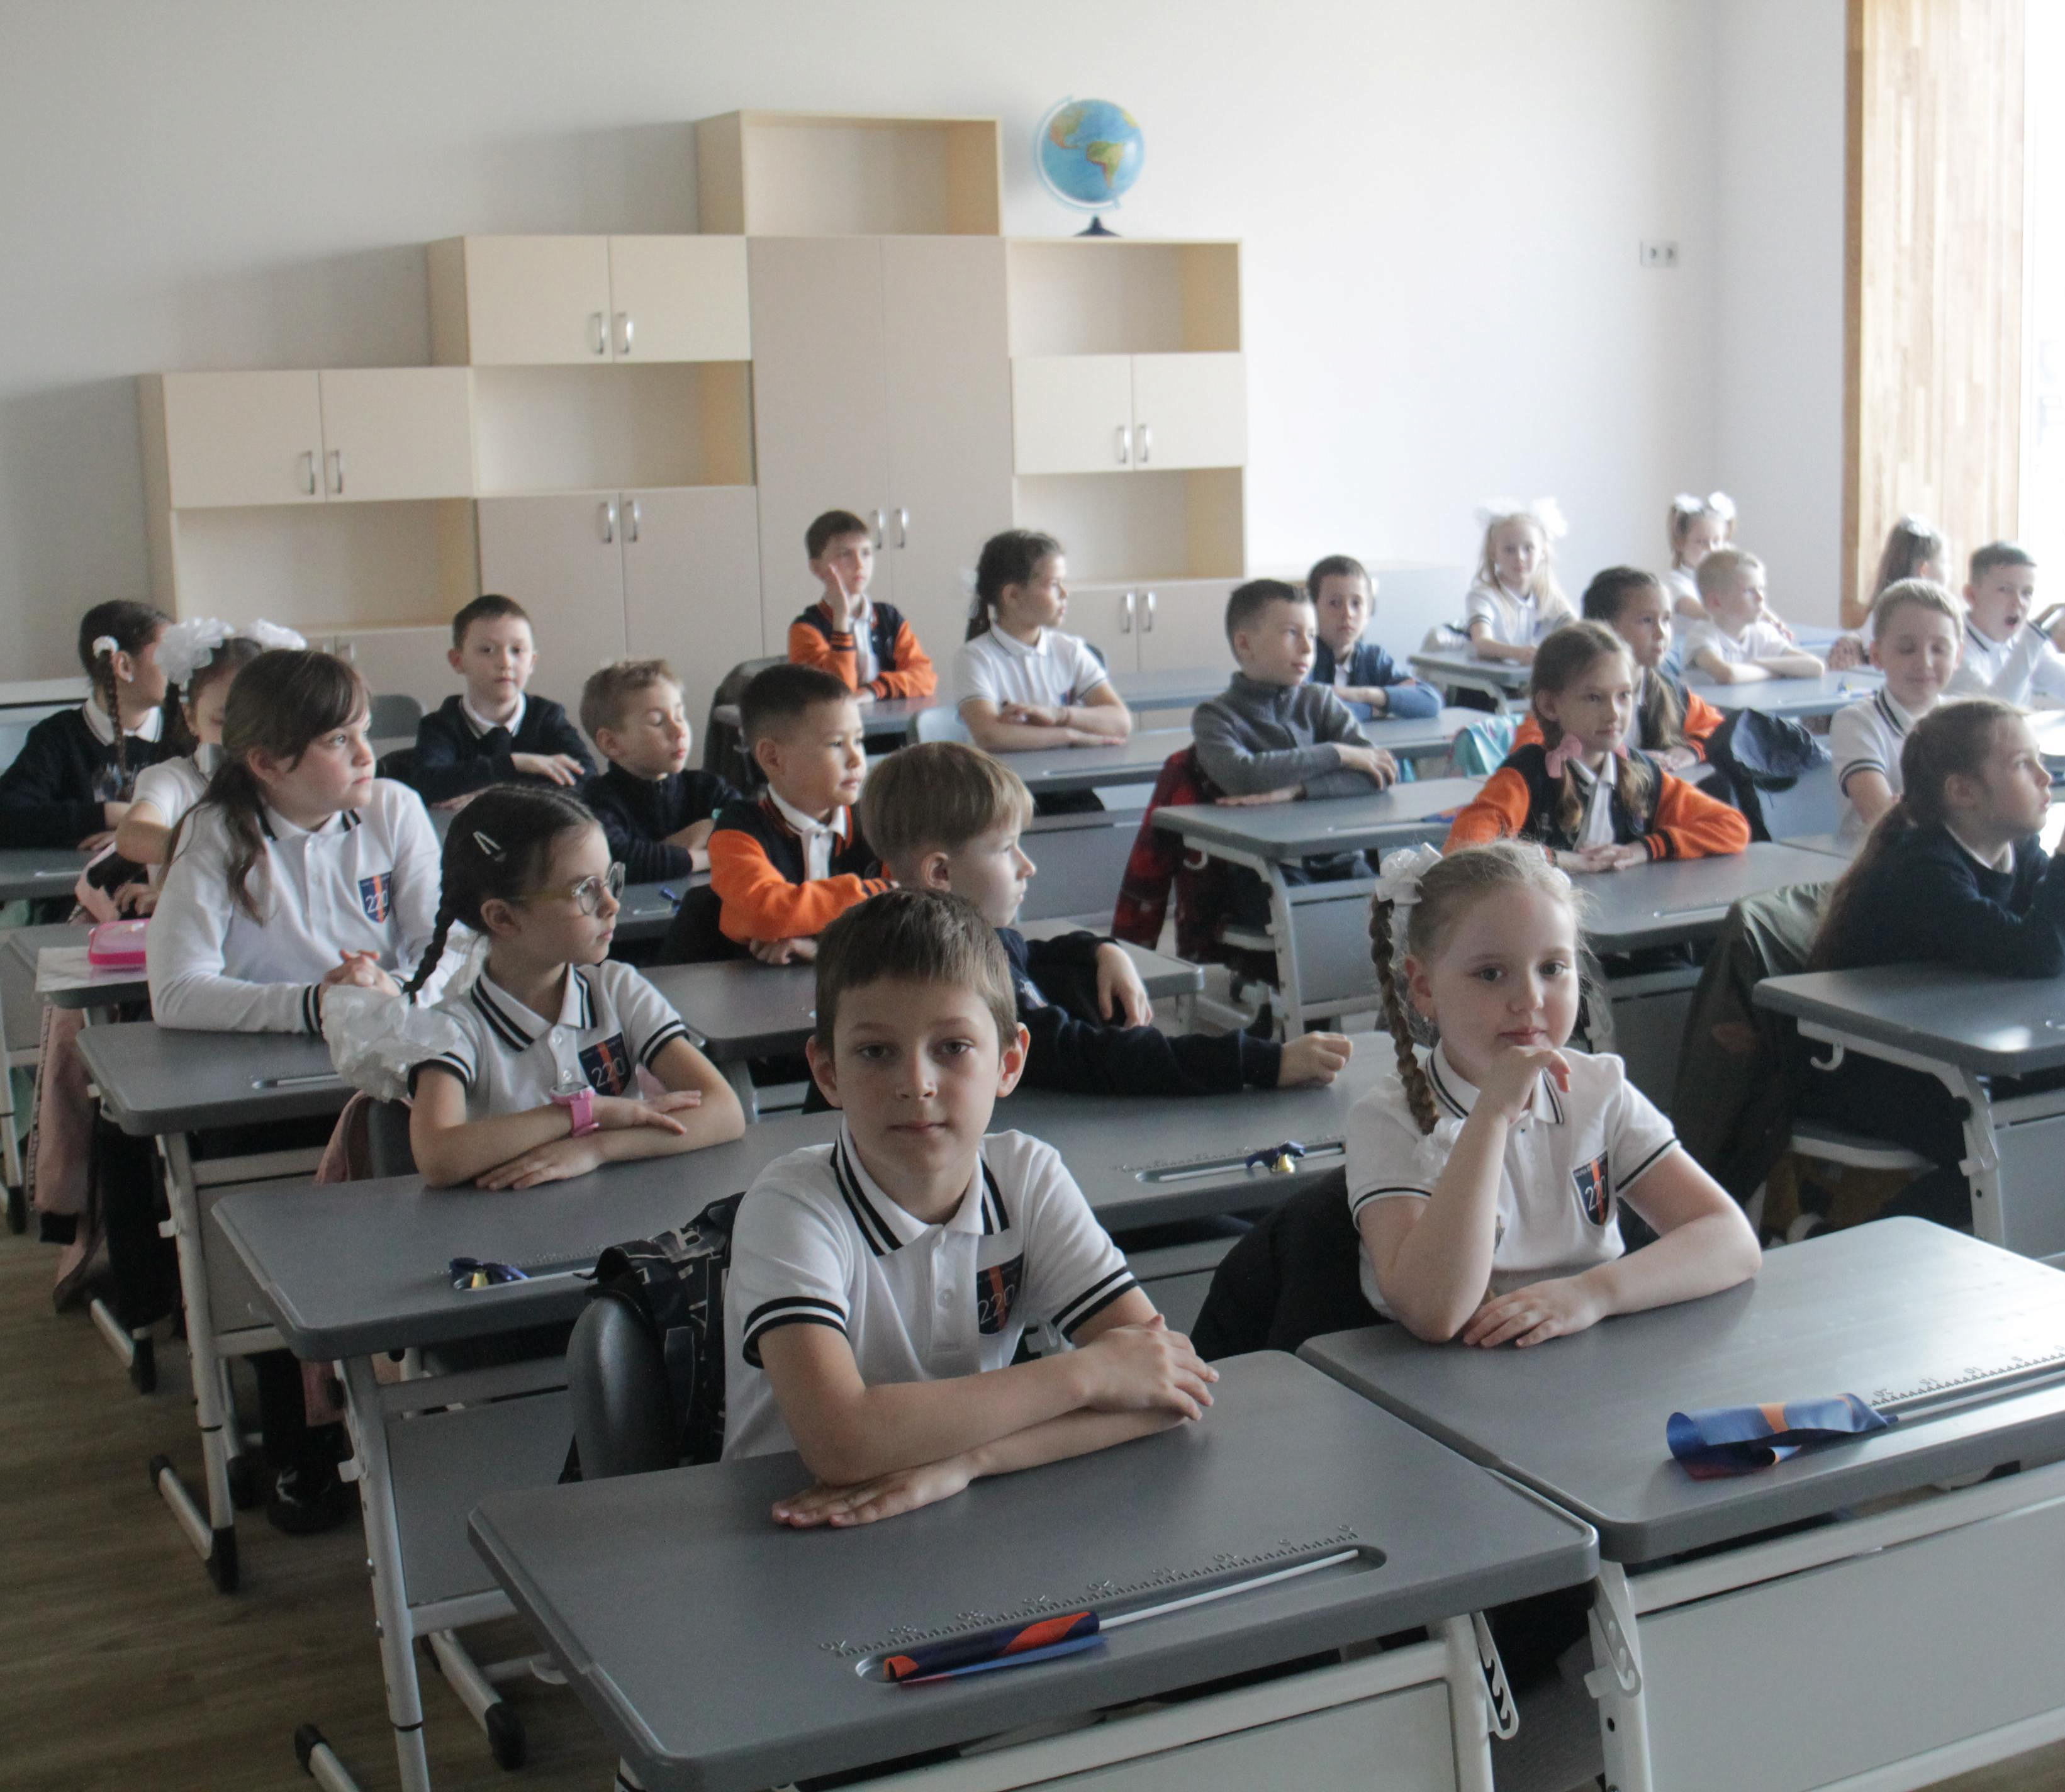 793 учителя не хватает школам Новосибирска